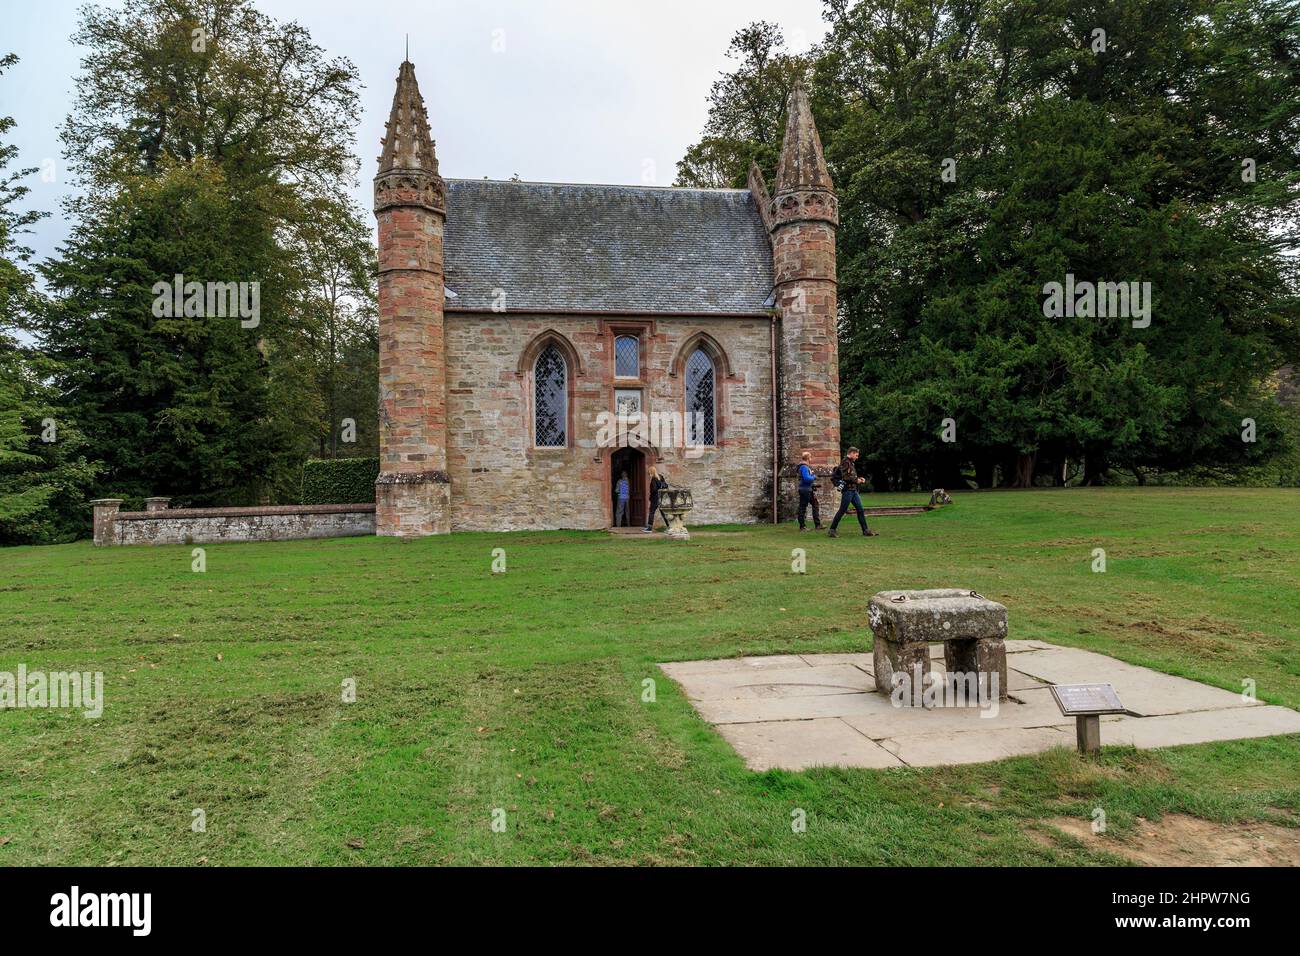 SCONE, GROSSBRITANNIEN - 11. SEPTEMBER 2014: Dies ist die Scone Castle Chapel und die Kopie des Steins von Scone, der heiligen Reliquie Schottlands, auf der sich die Kirche befindet Stockfoto